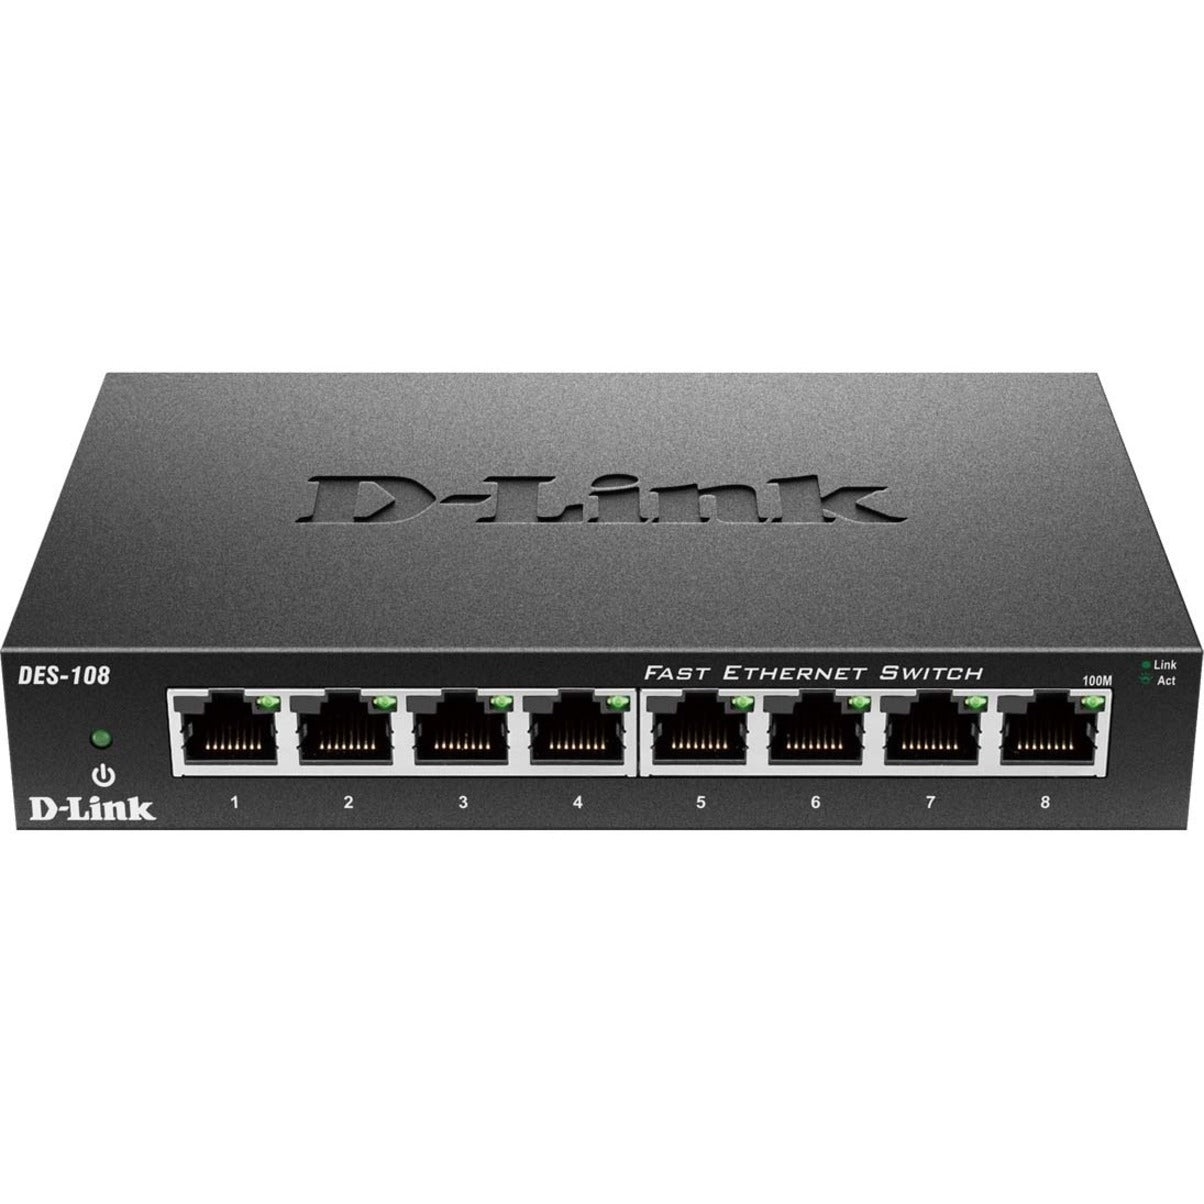 D-Link DES-108 Desktop Unmanaged Ethernet Switch, 8-Port 10/100 Metal Switch